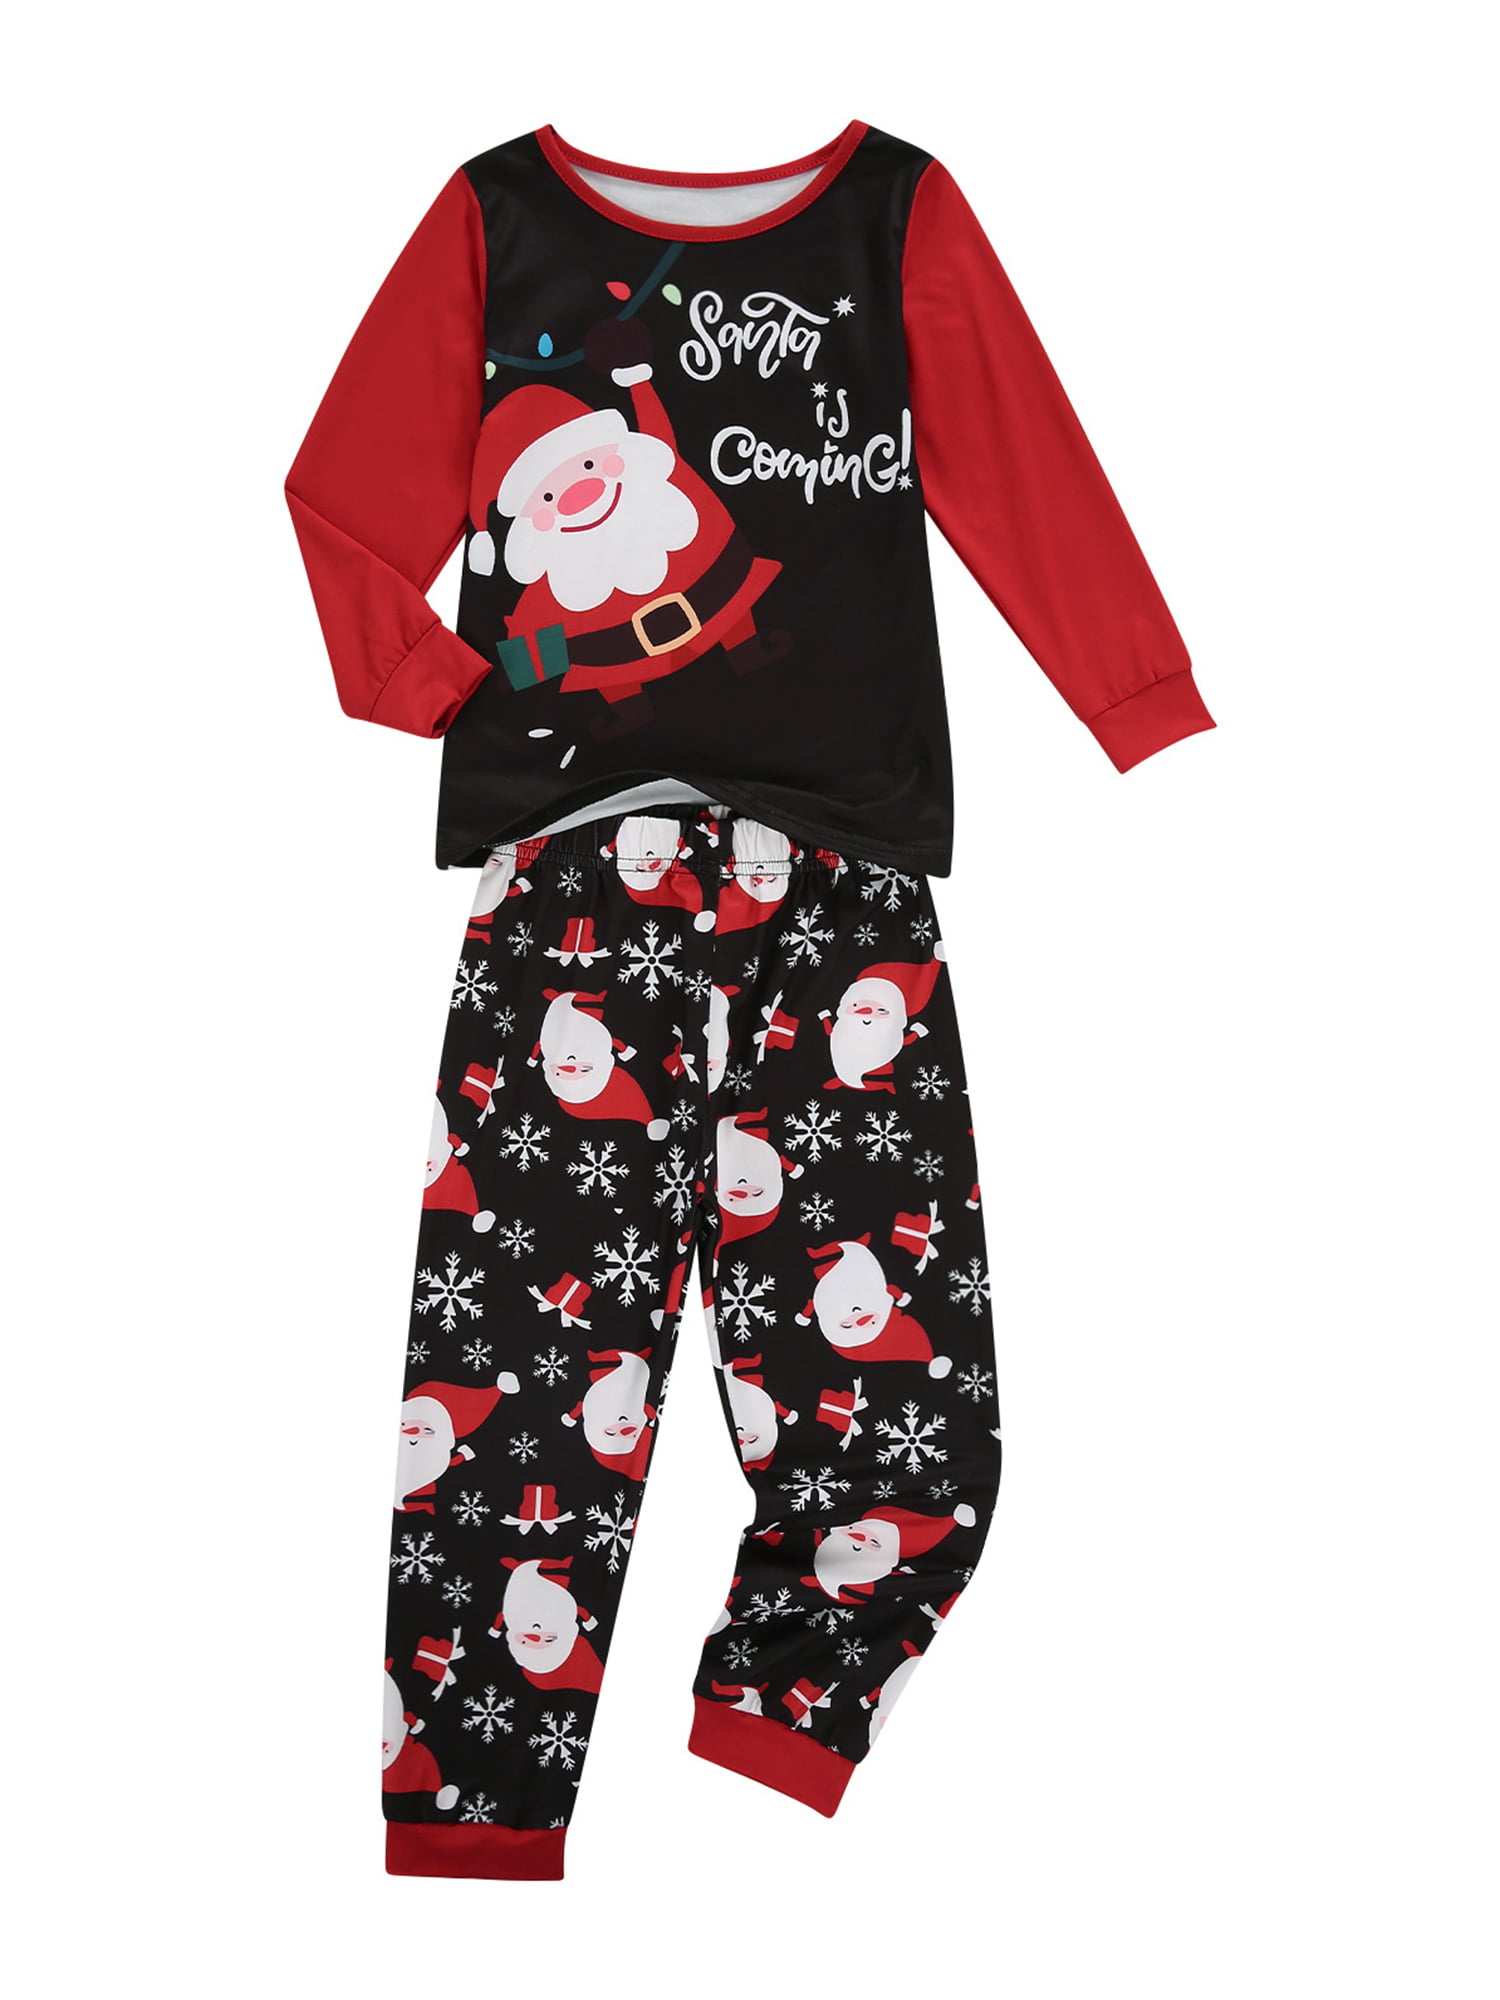 Kid Little Boys Girls Christmas Leggings Fashion Xmas Print